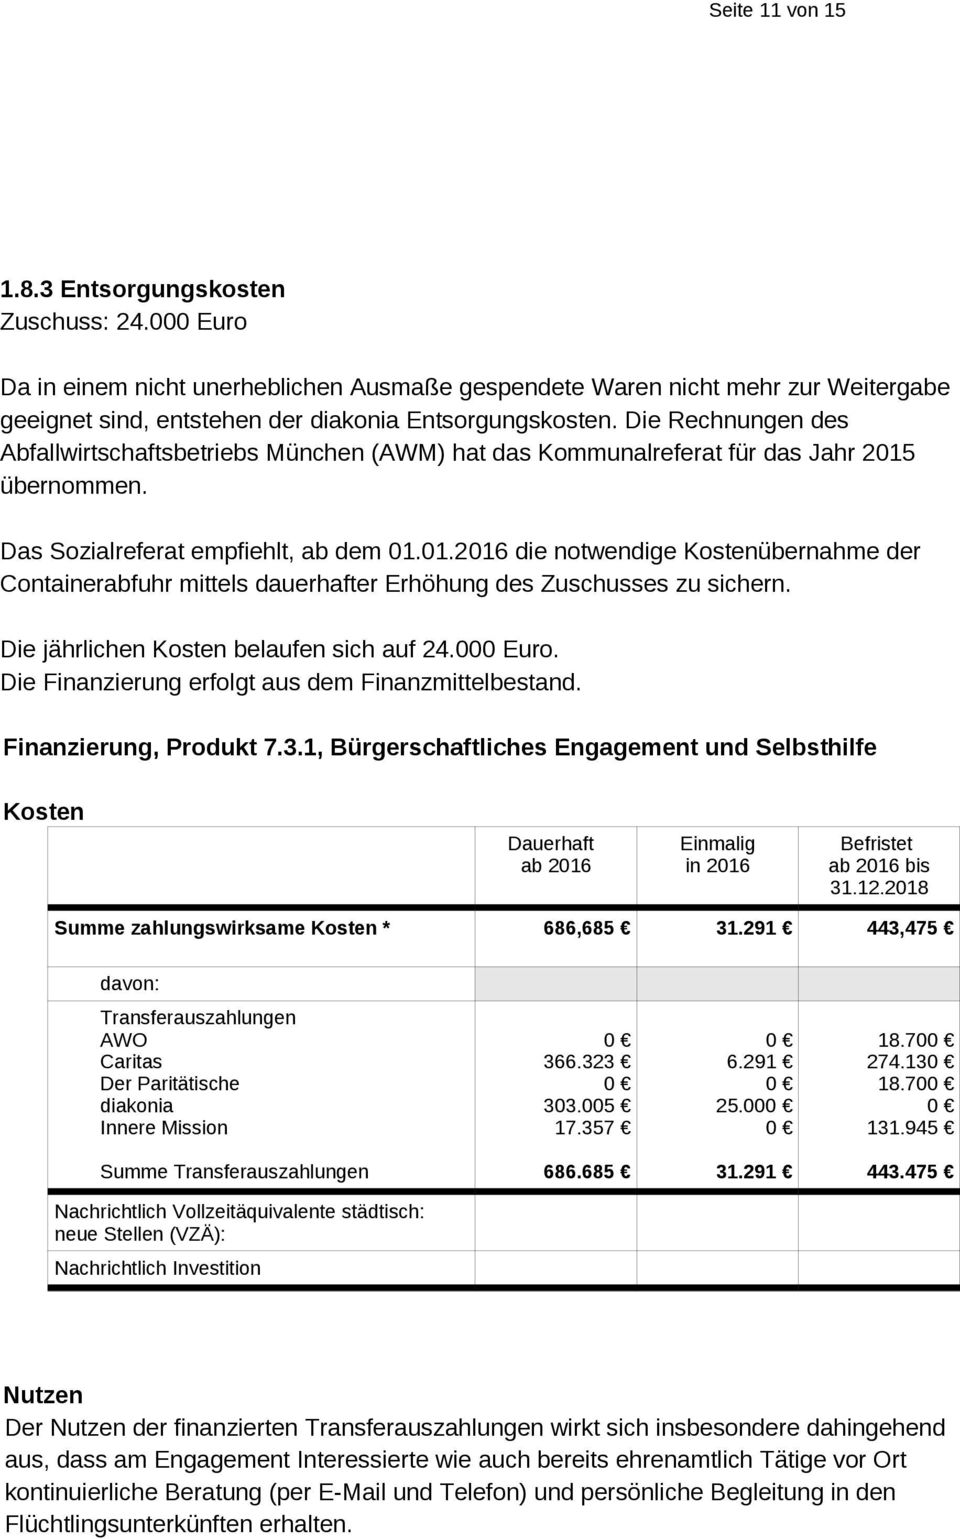 Die Rechnungen des Abfallwirtschaftsbetriebs München (AWM) hat das Kommunalreferat für das Jahr 2015